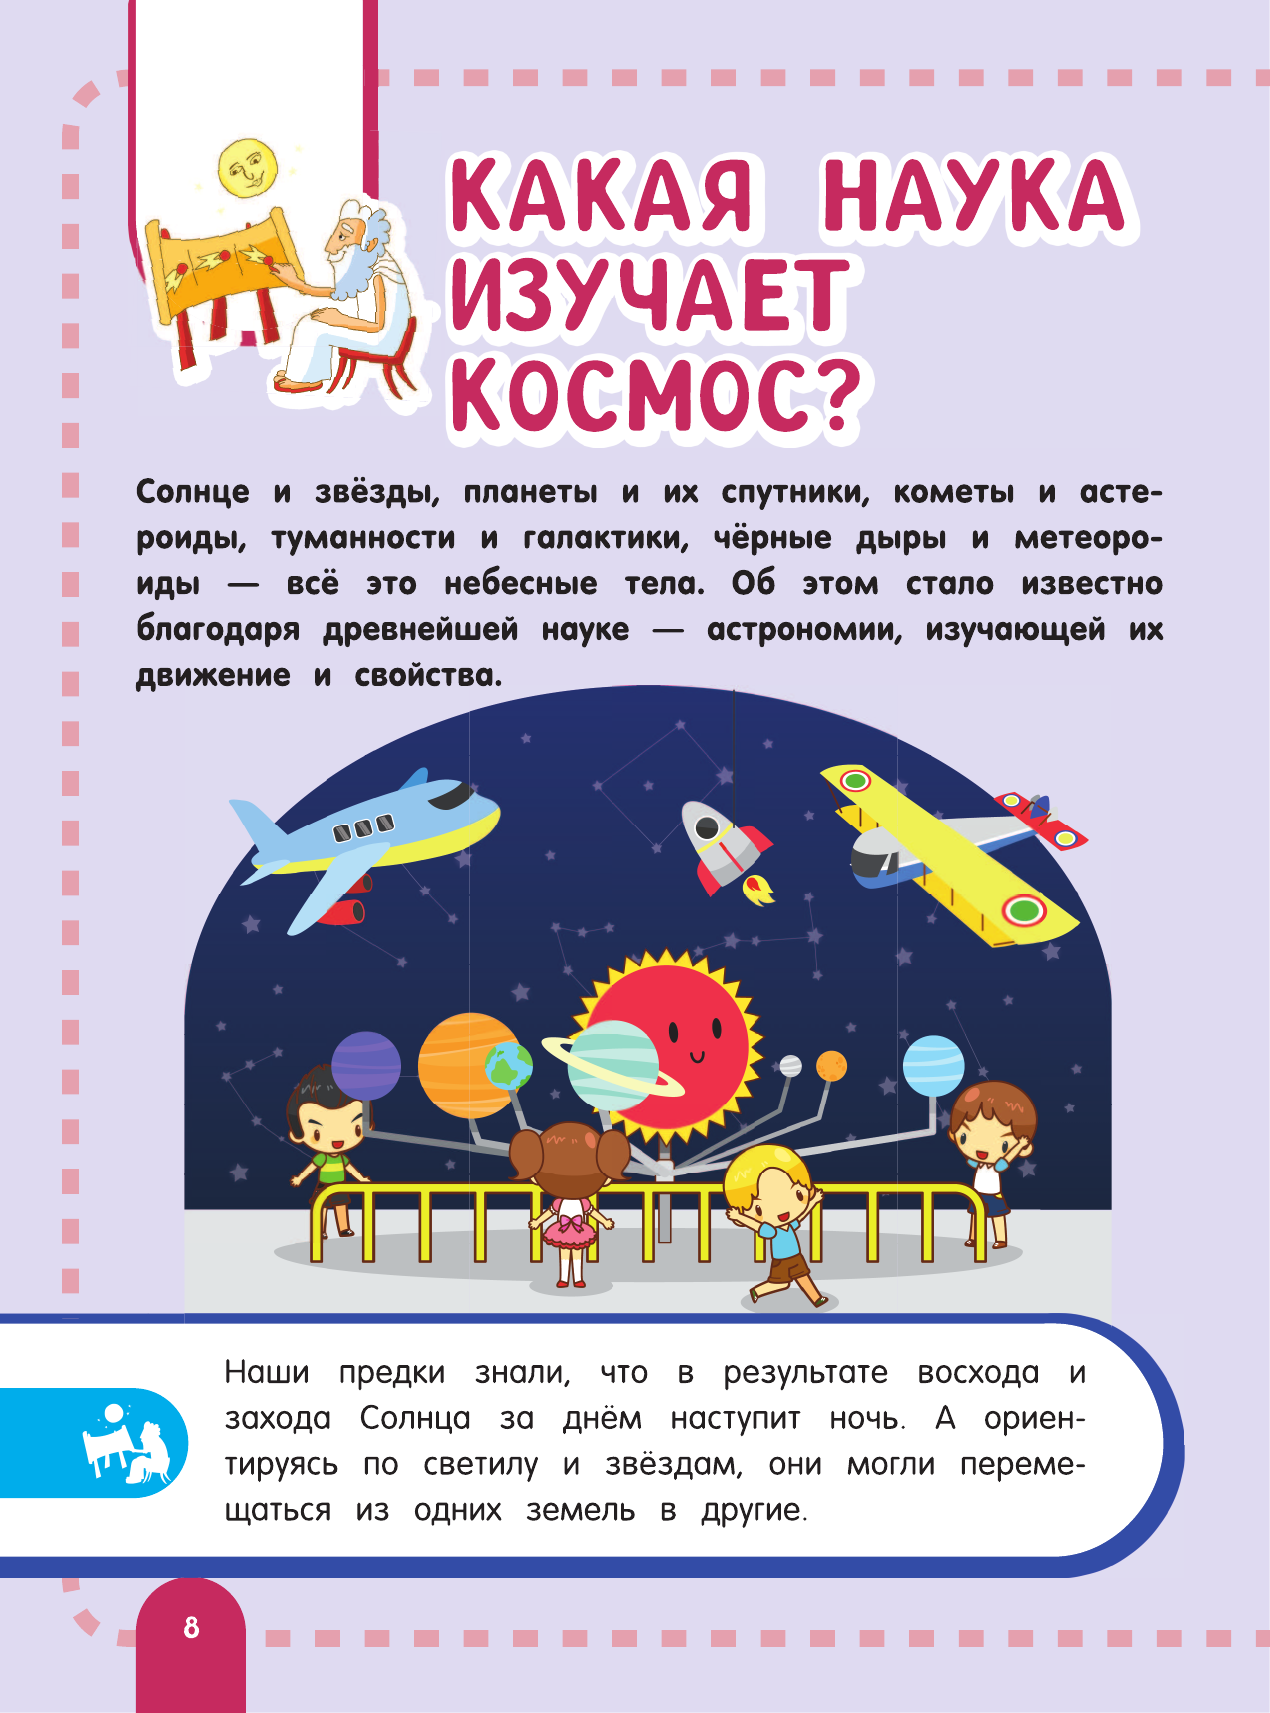 Главная энциклопедия ребёнка о космосе - фото №10